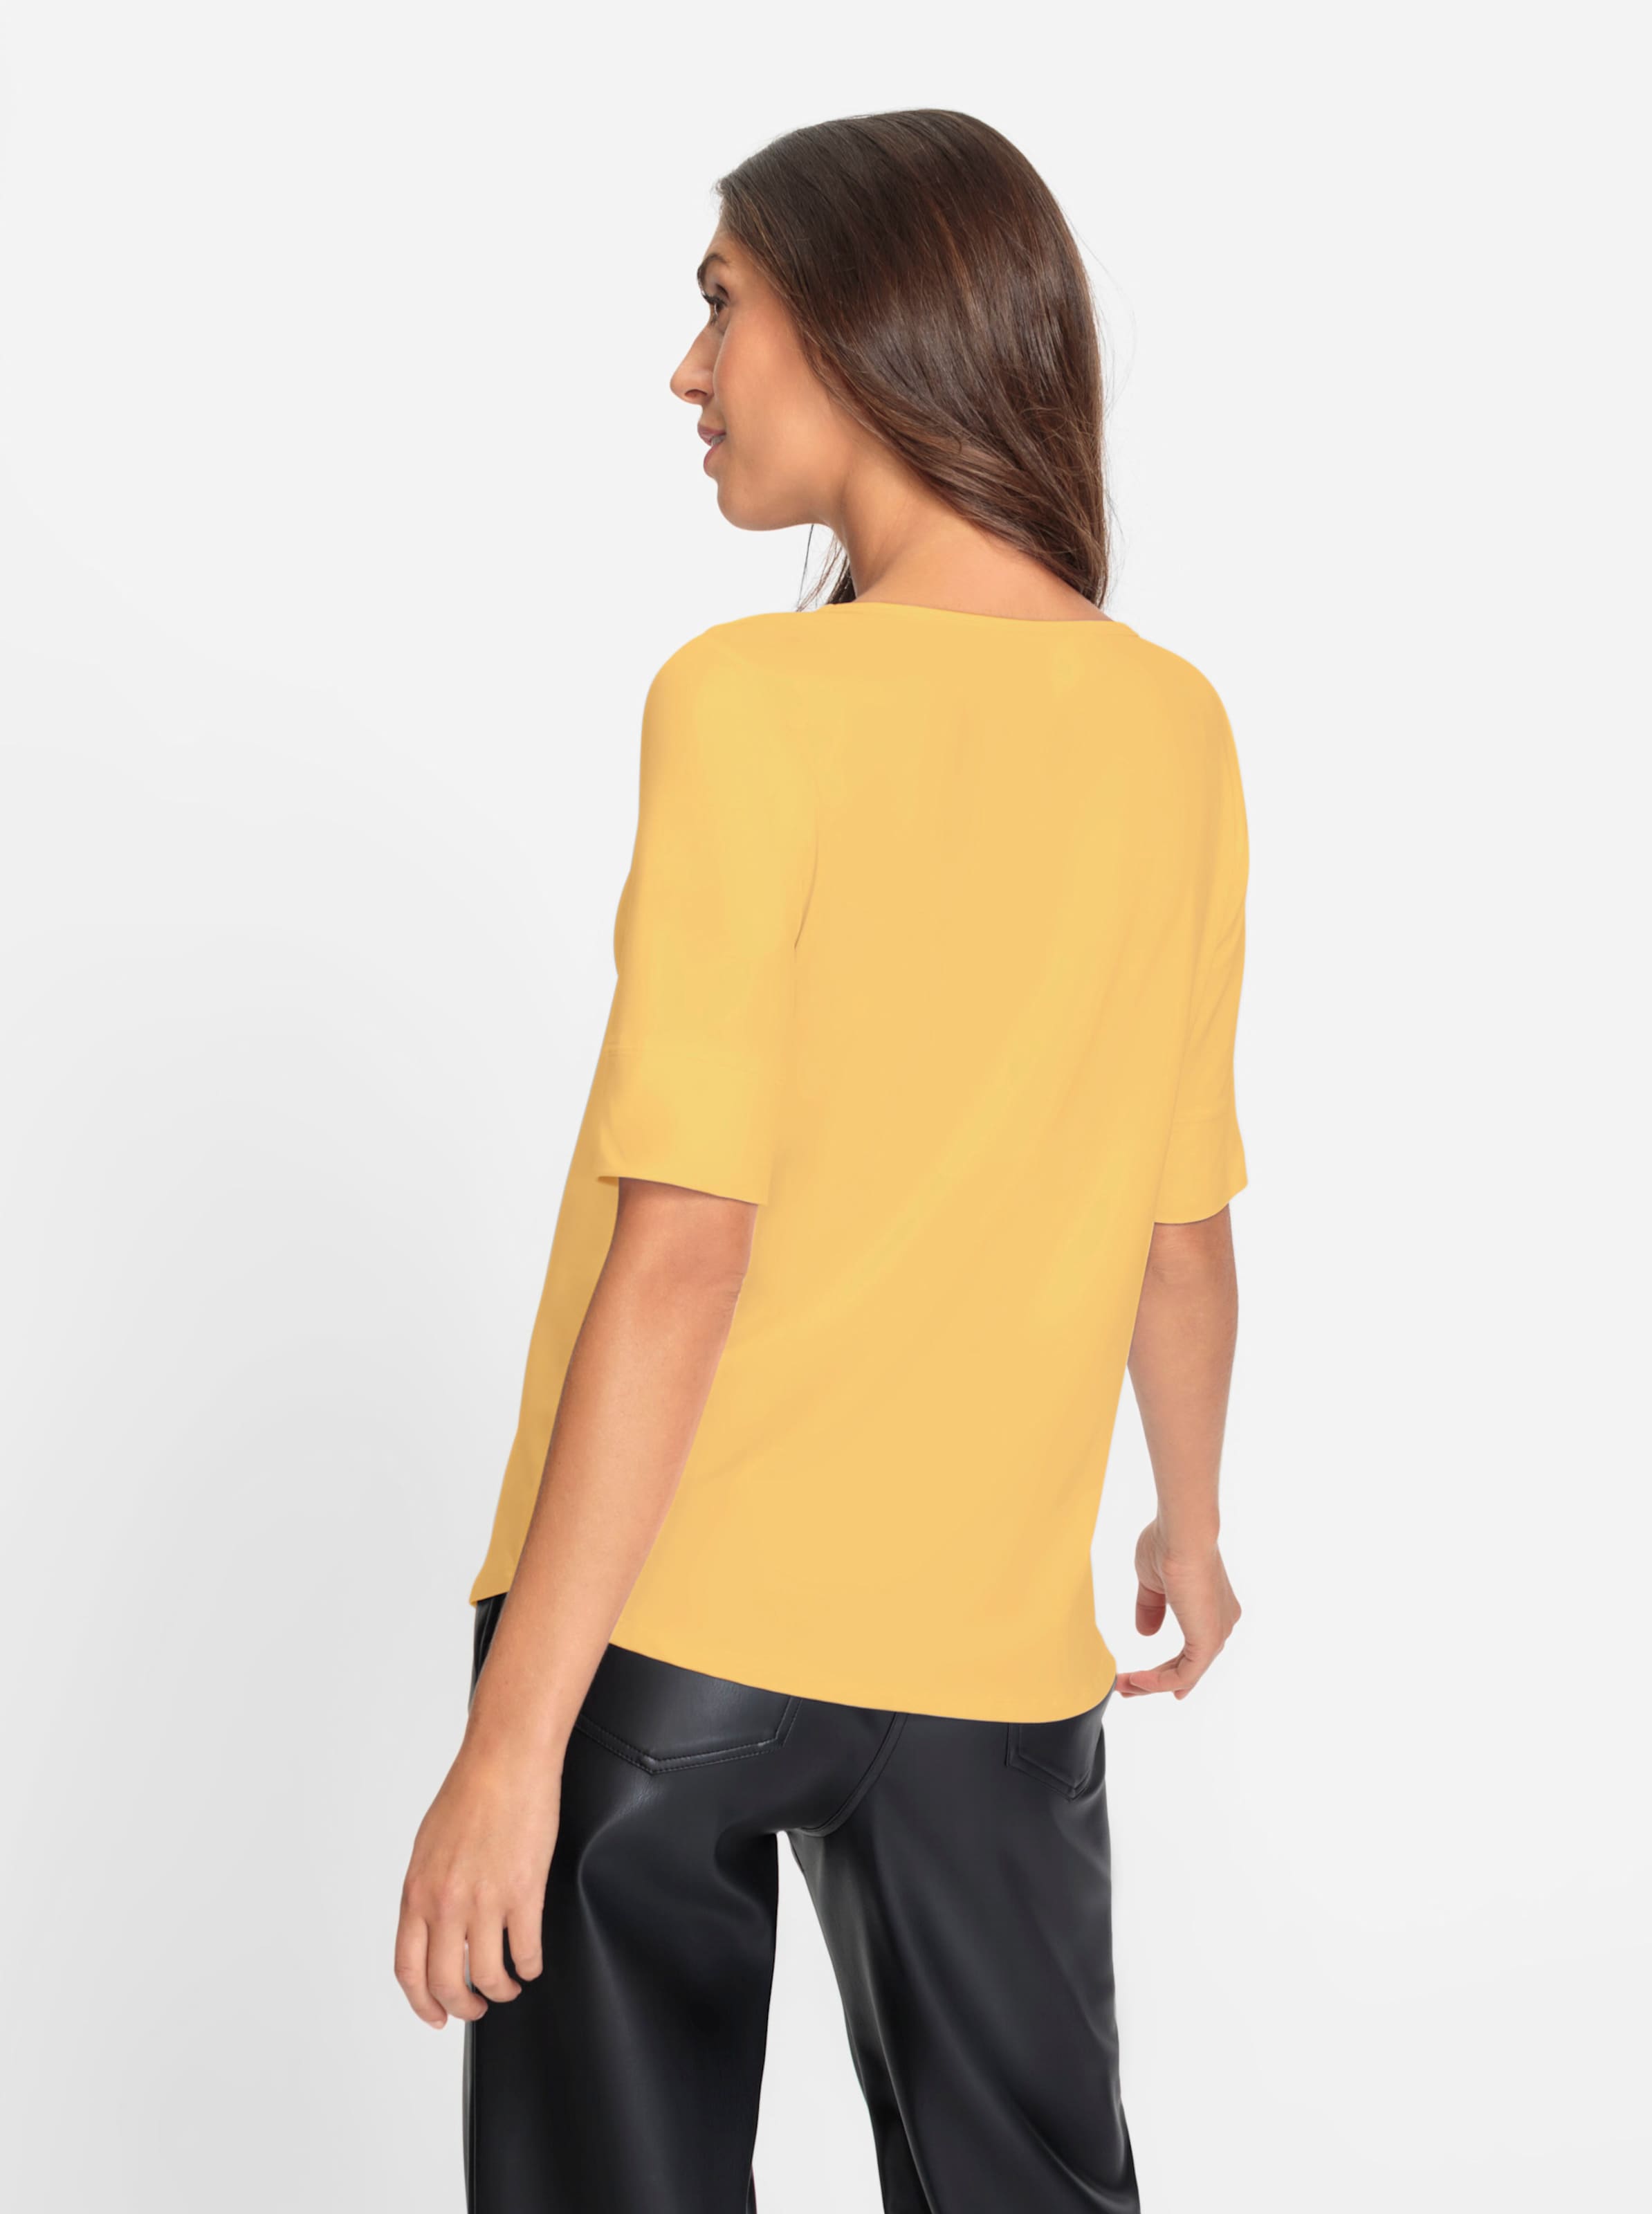 Leicht günstig Kaufen-Shirt in gelb von heine. Shirt in gelb von heine <![CDATA[Shirt Aus angenehmer knitterarmen Tactel-Qualität. Femininer weiter Rundhals-Ausschnitt. Leicht tailliert mit etwas längerem Halbarm. Bequeme Bündchen an den Ärmeln.]]>. 